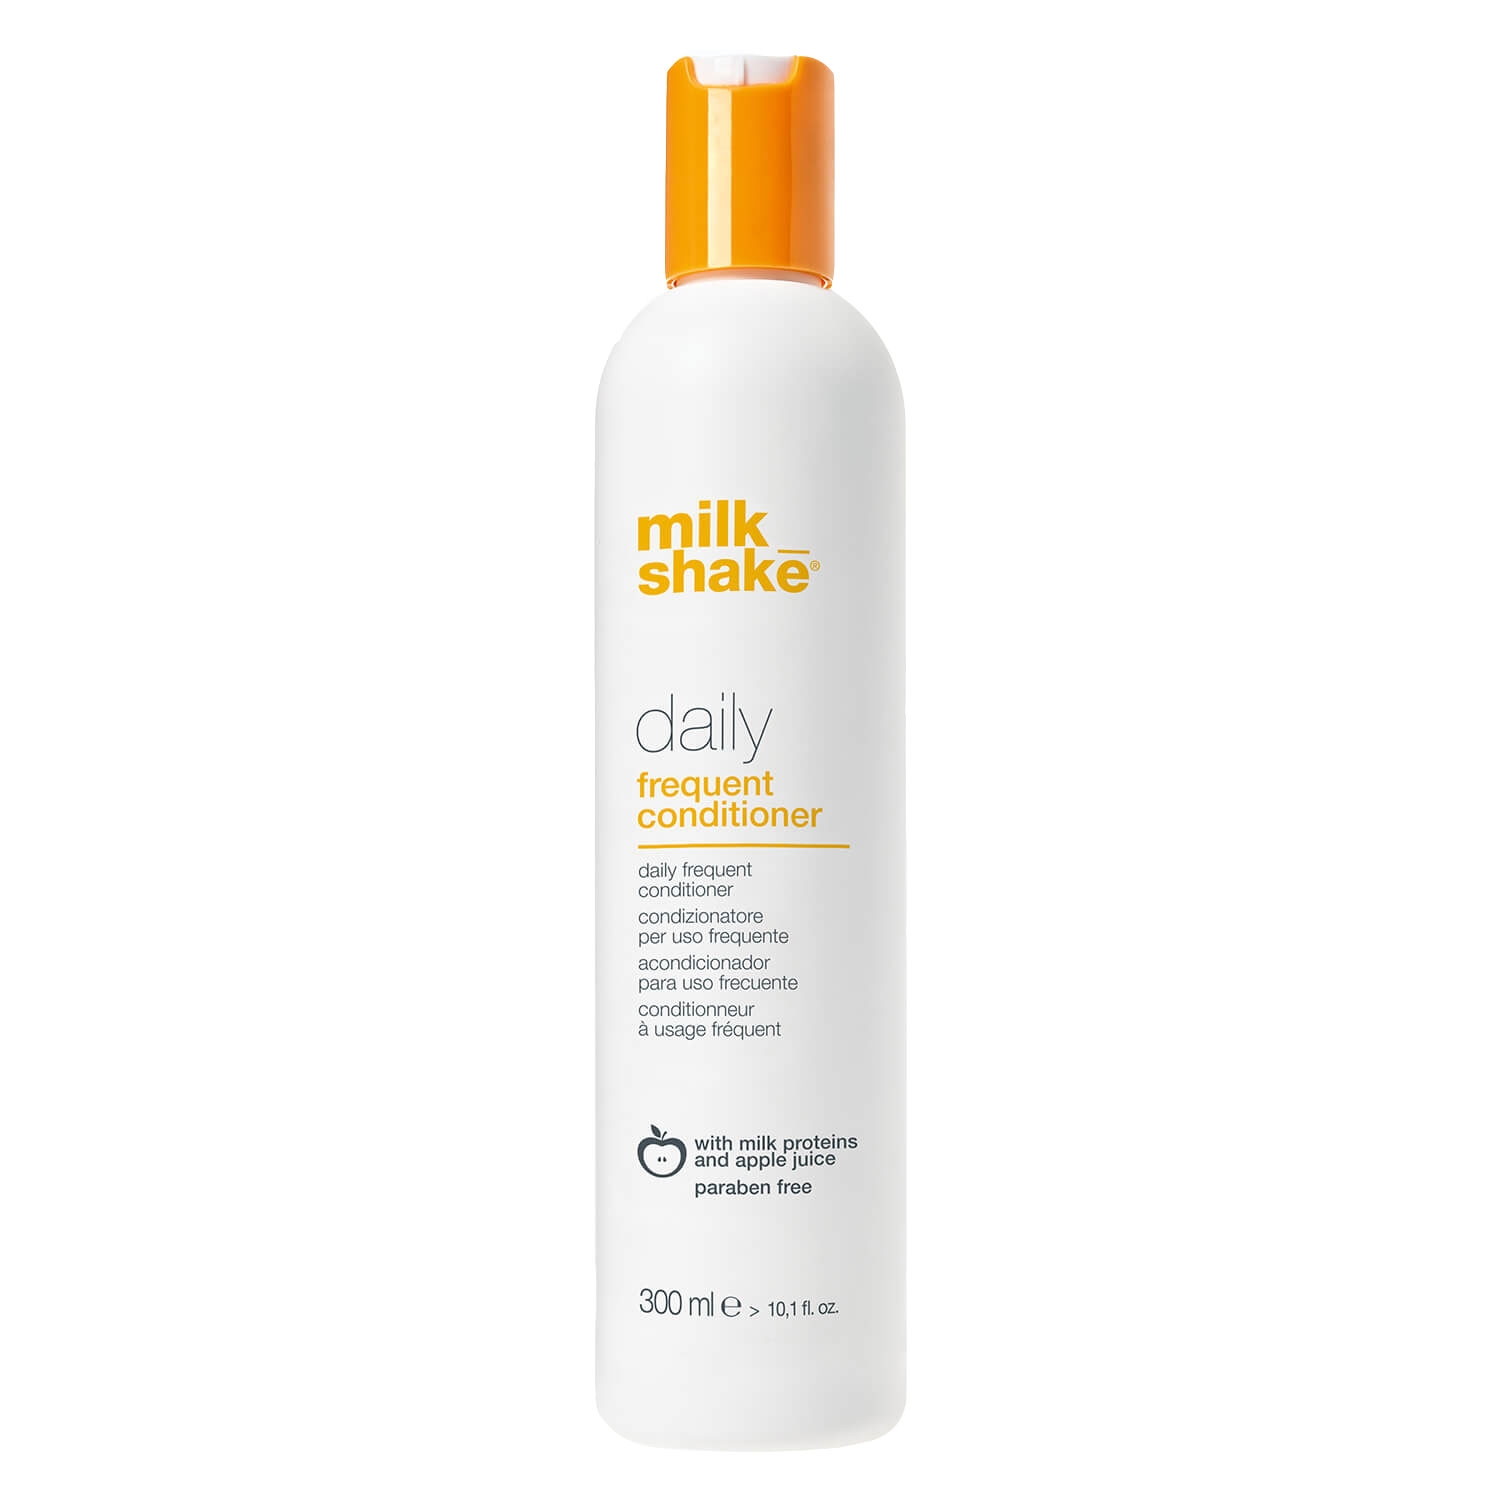 Produktbild von milk_shake daily - conditioner